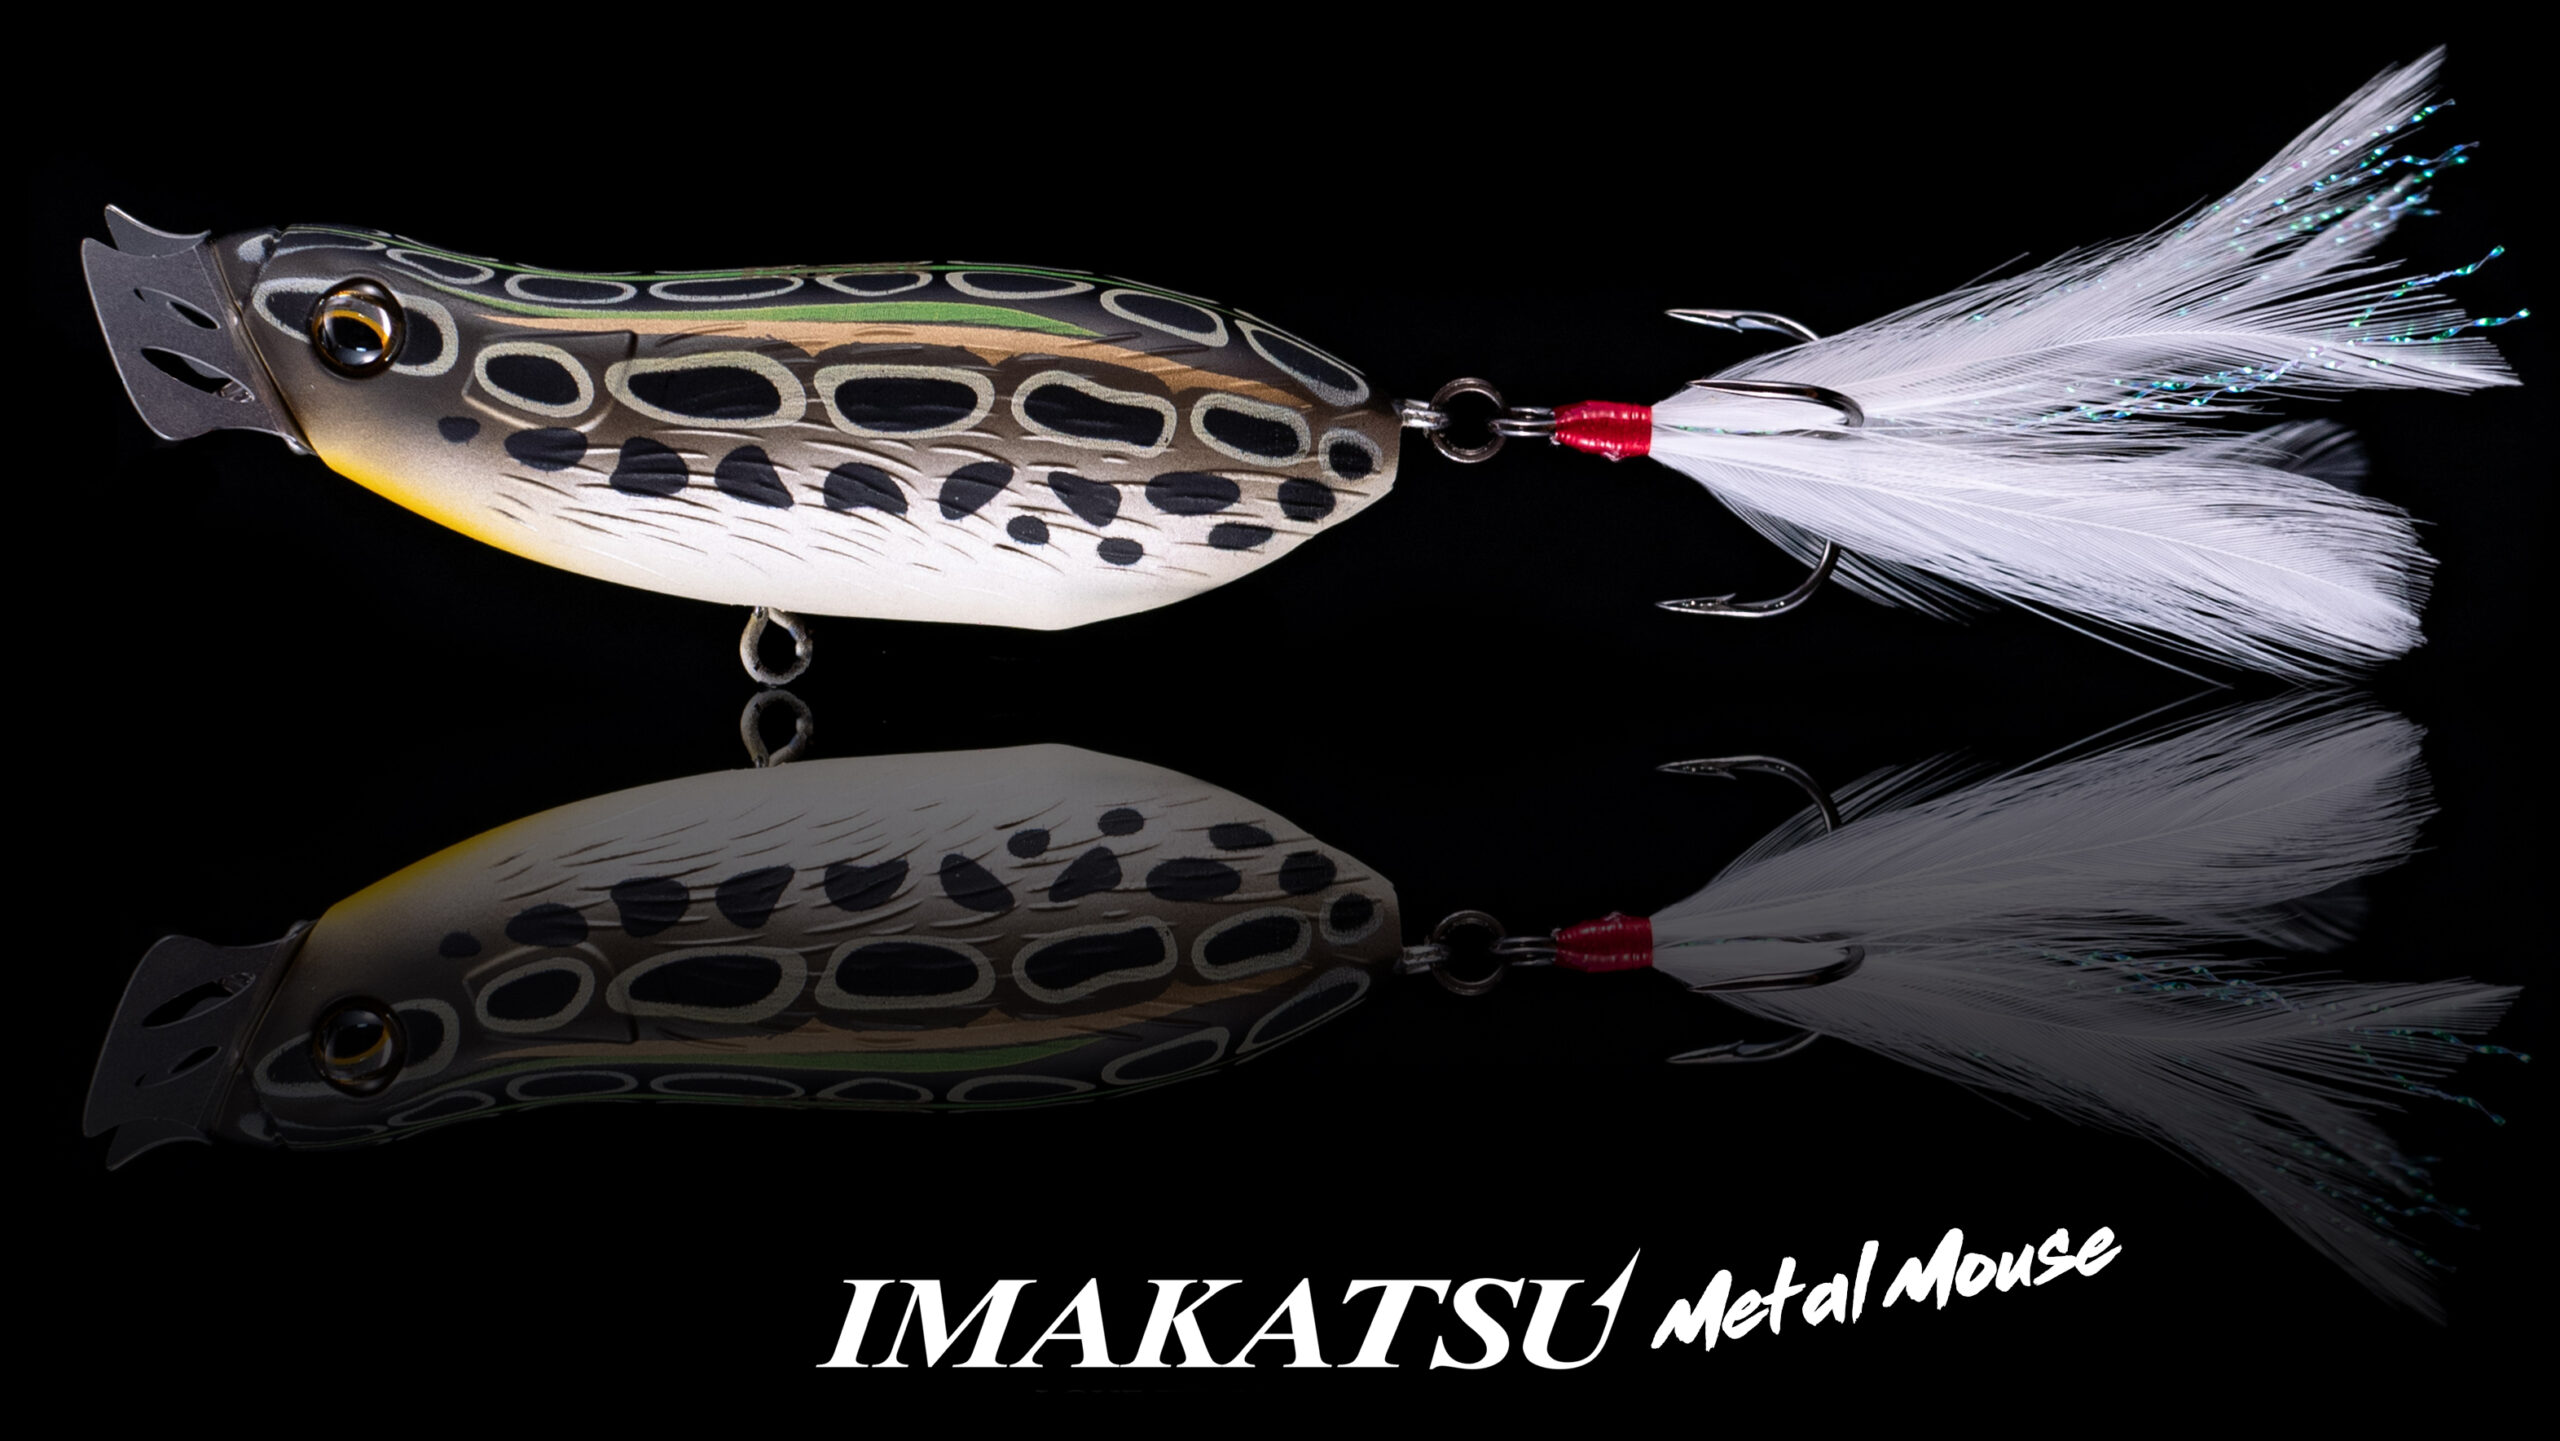 Imakatsu Metal Mouse – Way Of Fishing